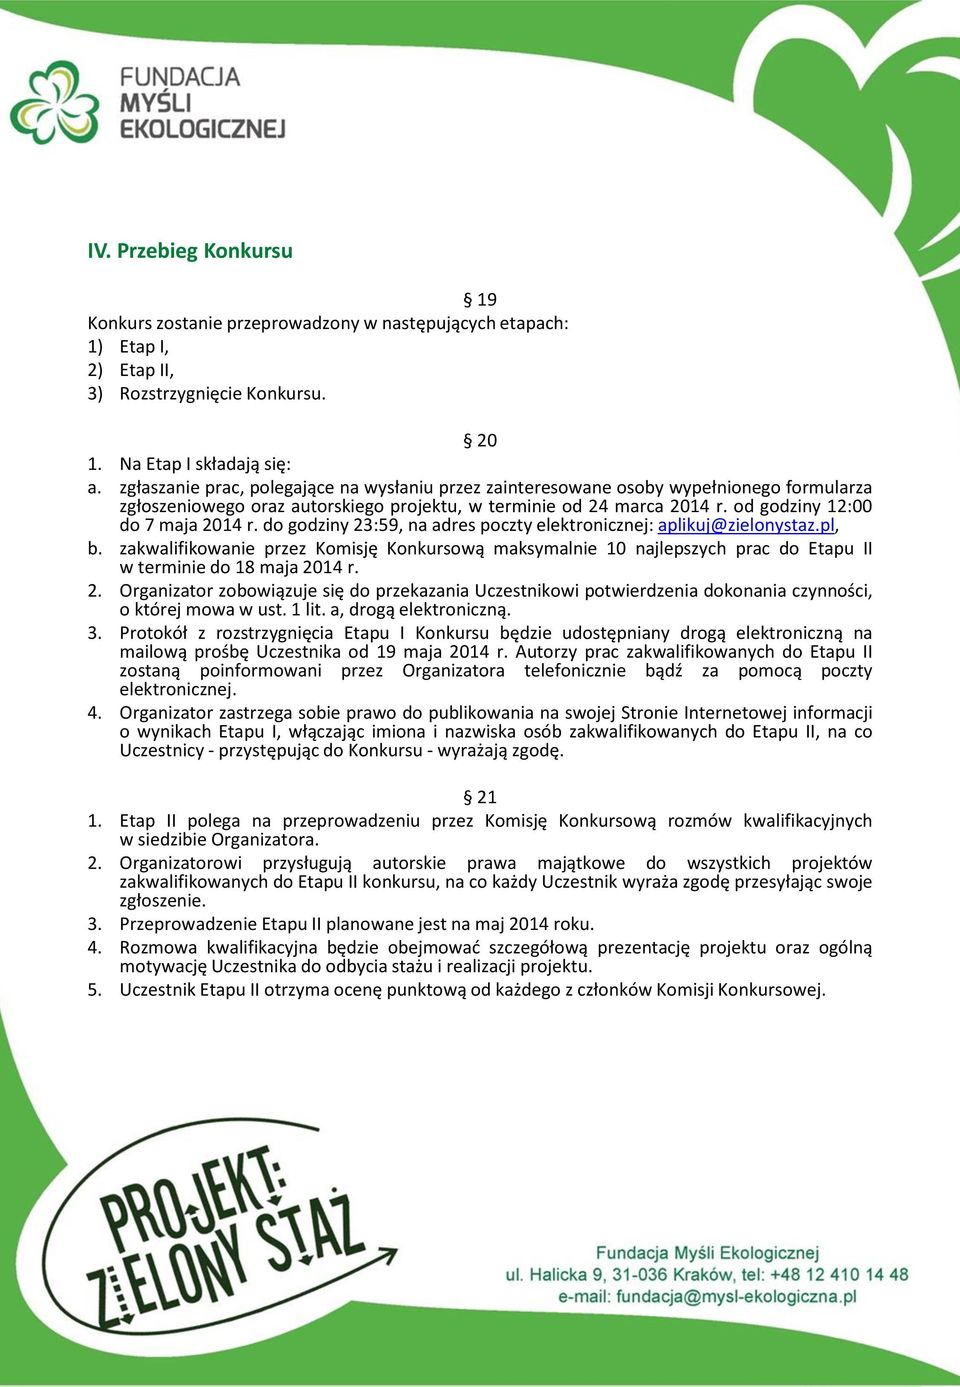 do godziny 23:59, na adres poczty elektronicznej: aplikuj@zielonystaz.pl, b. zakwalifikowanie przez Komisję Konkursową maksymalnie 10 najlepszych prac do Etapu II w terminie do 18 maja 2014 r. 2. Organizator zobowiązuje się do przekazania Uczestnikowi potwierdzenia dokonania czynności, o której mowa w ust.